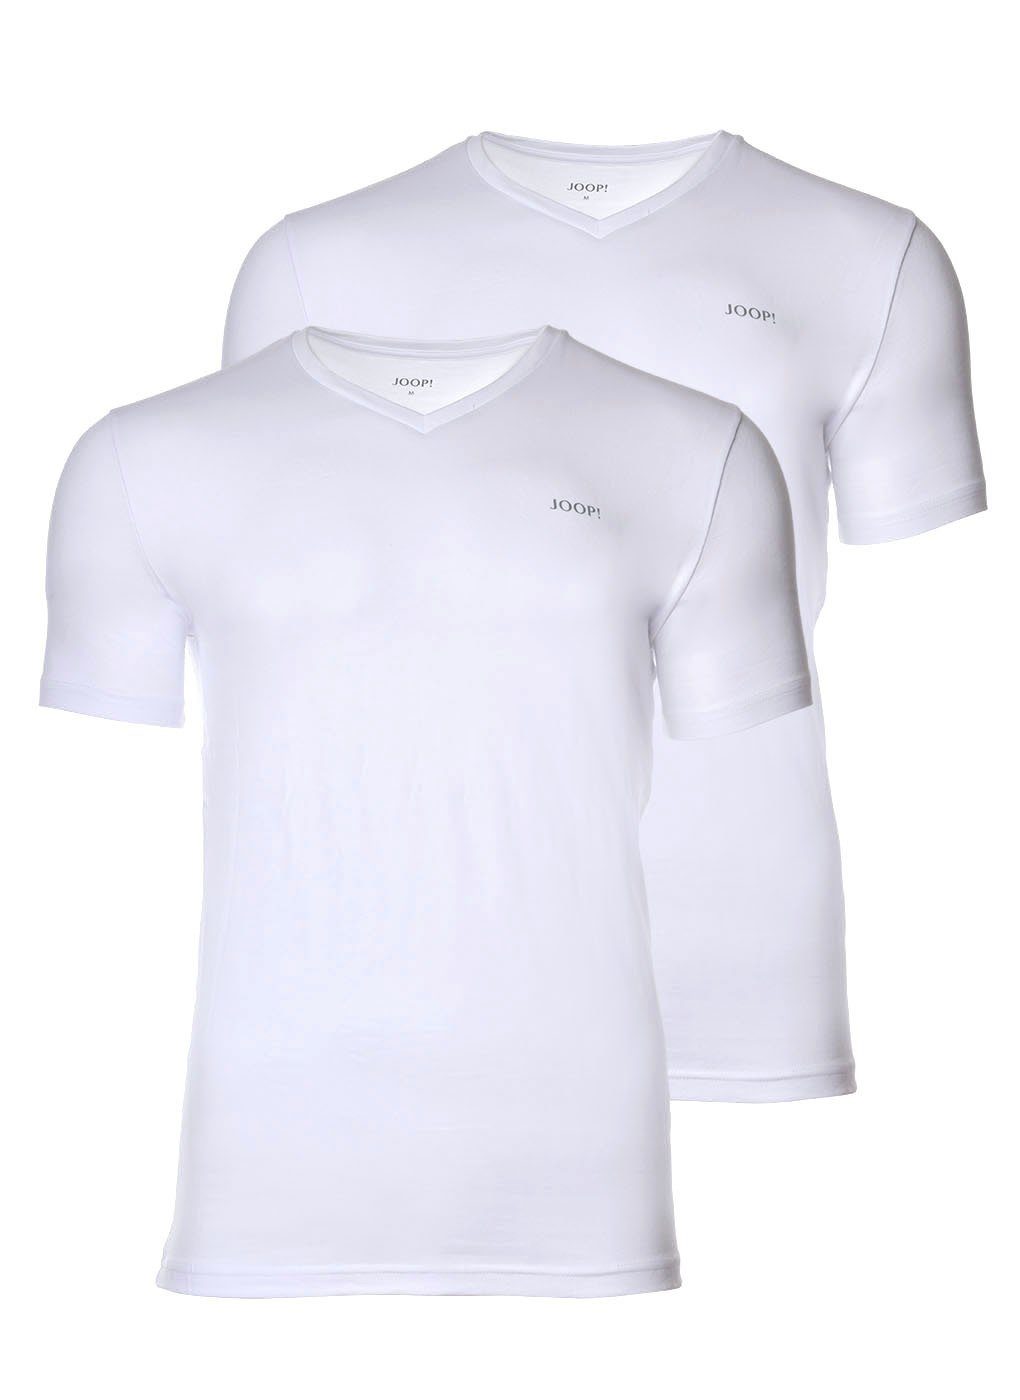 Joop! T-Shirt Herren Unterhemd, 2er Pack - T-Shirt, V-Neck Weiß